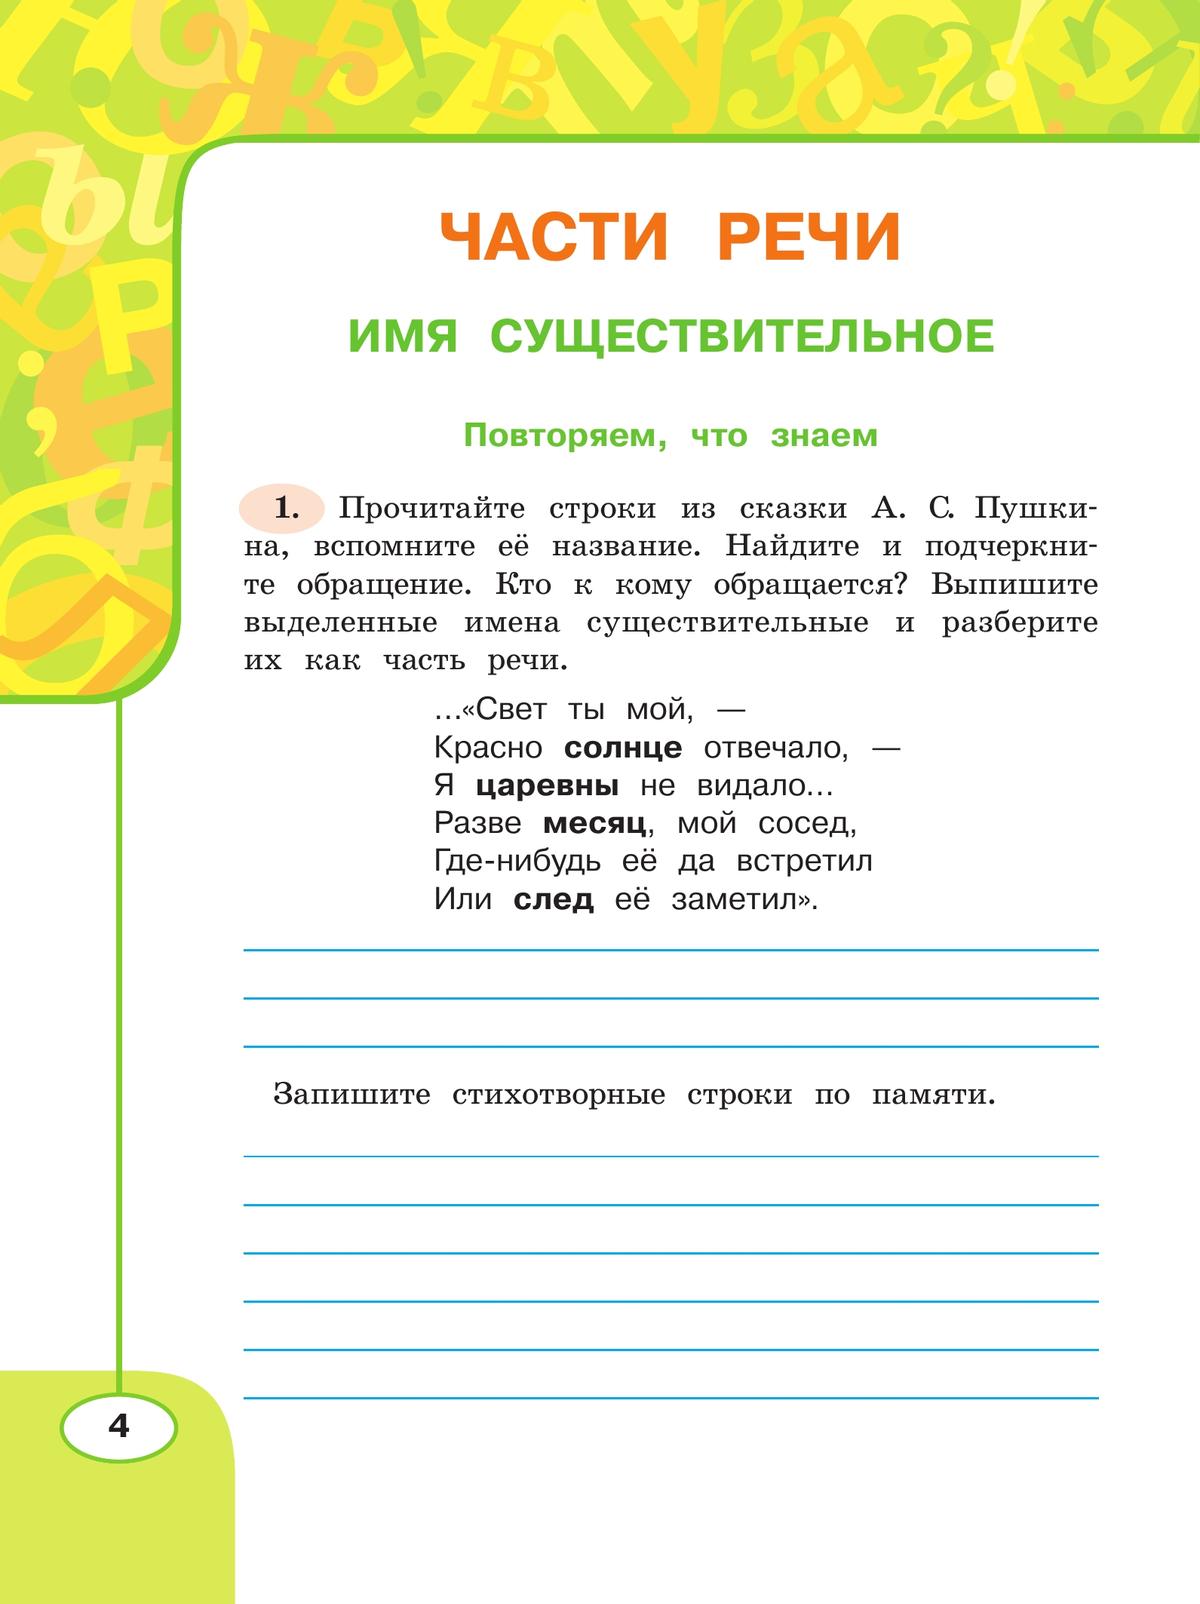 Русский язык. Рабочая тетрадь. 4 класс. В 2 частях. Часть 2 7